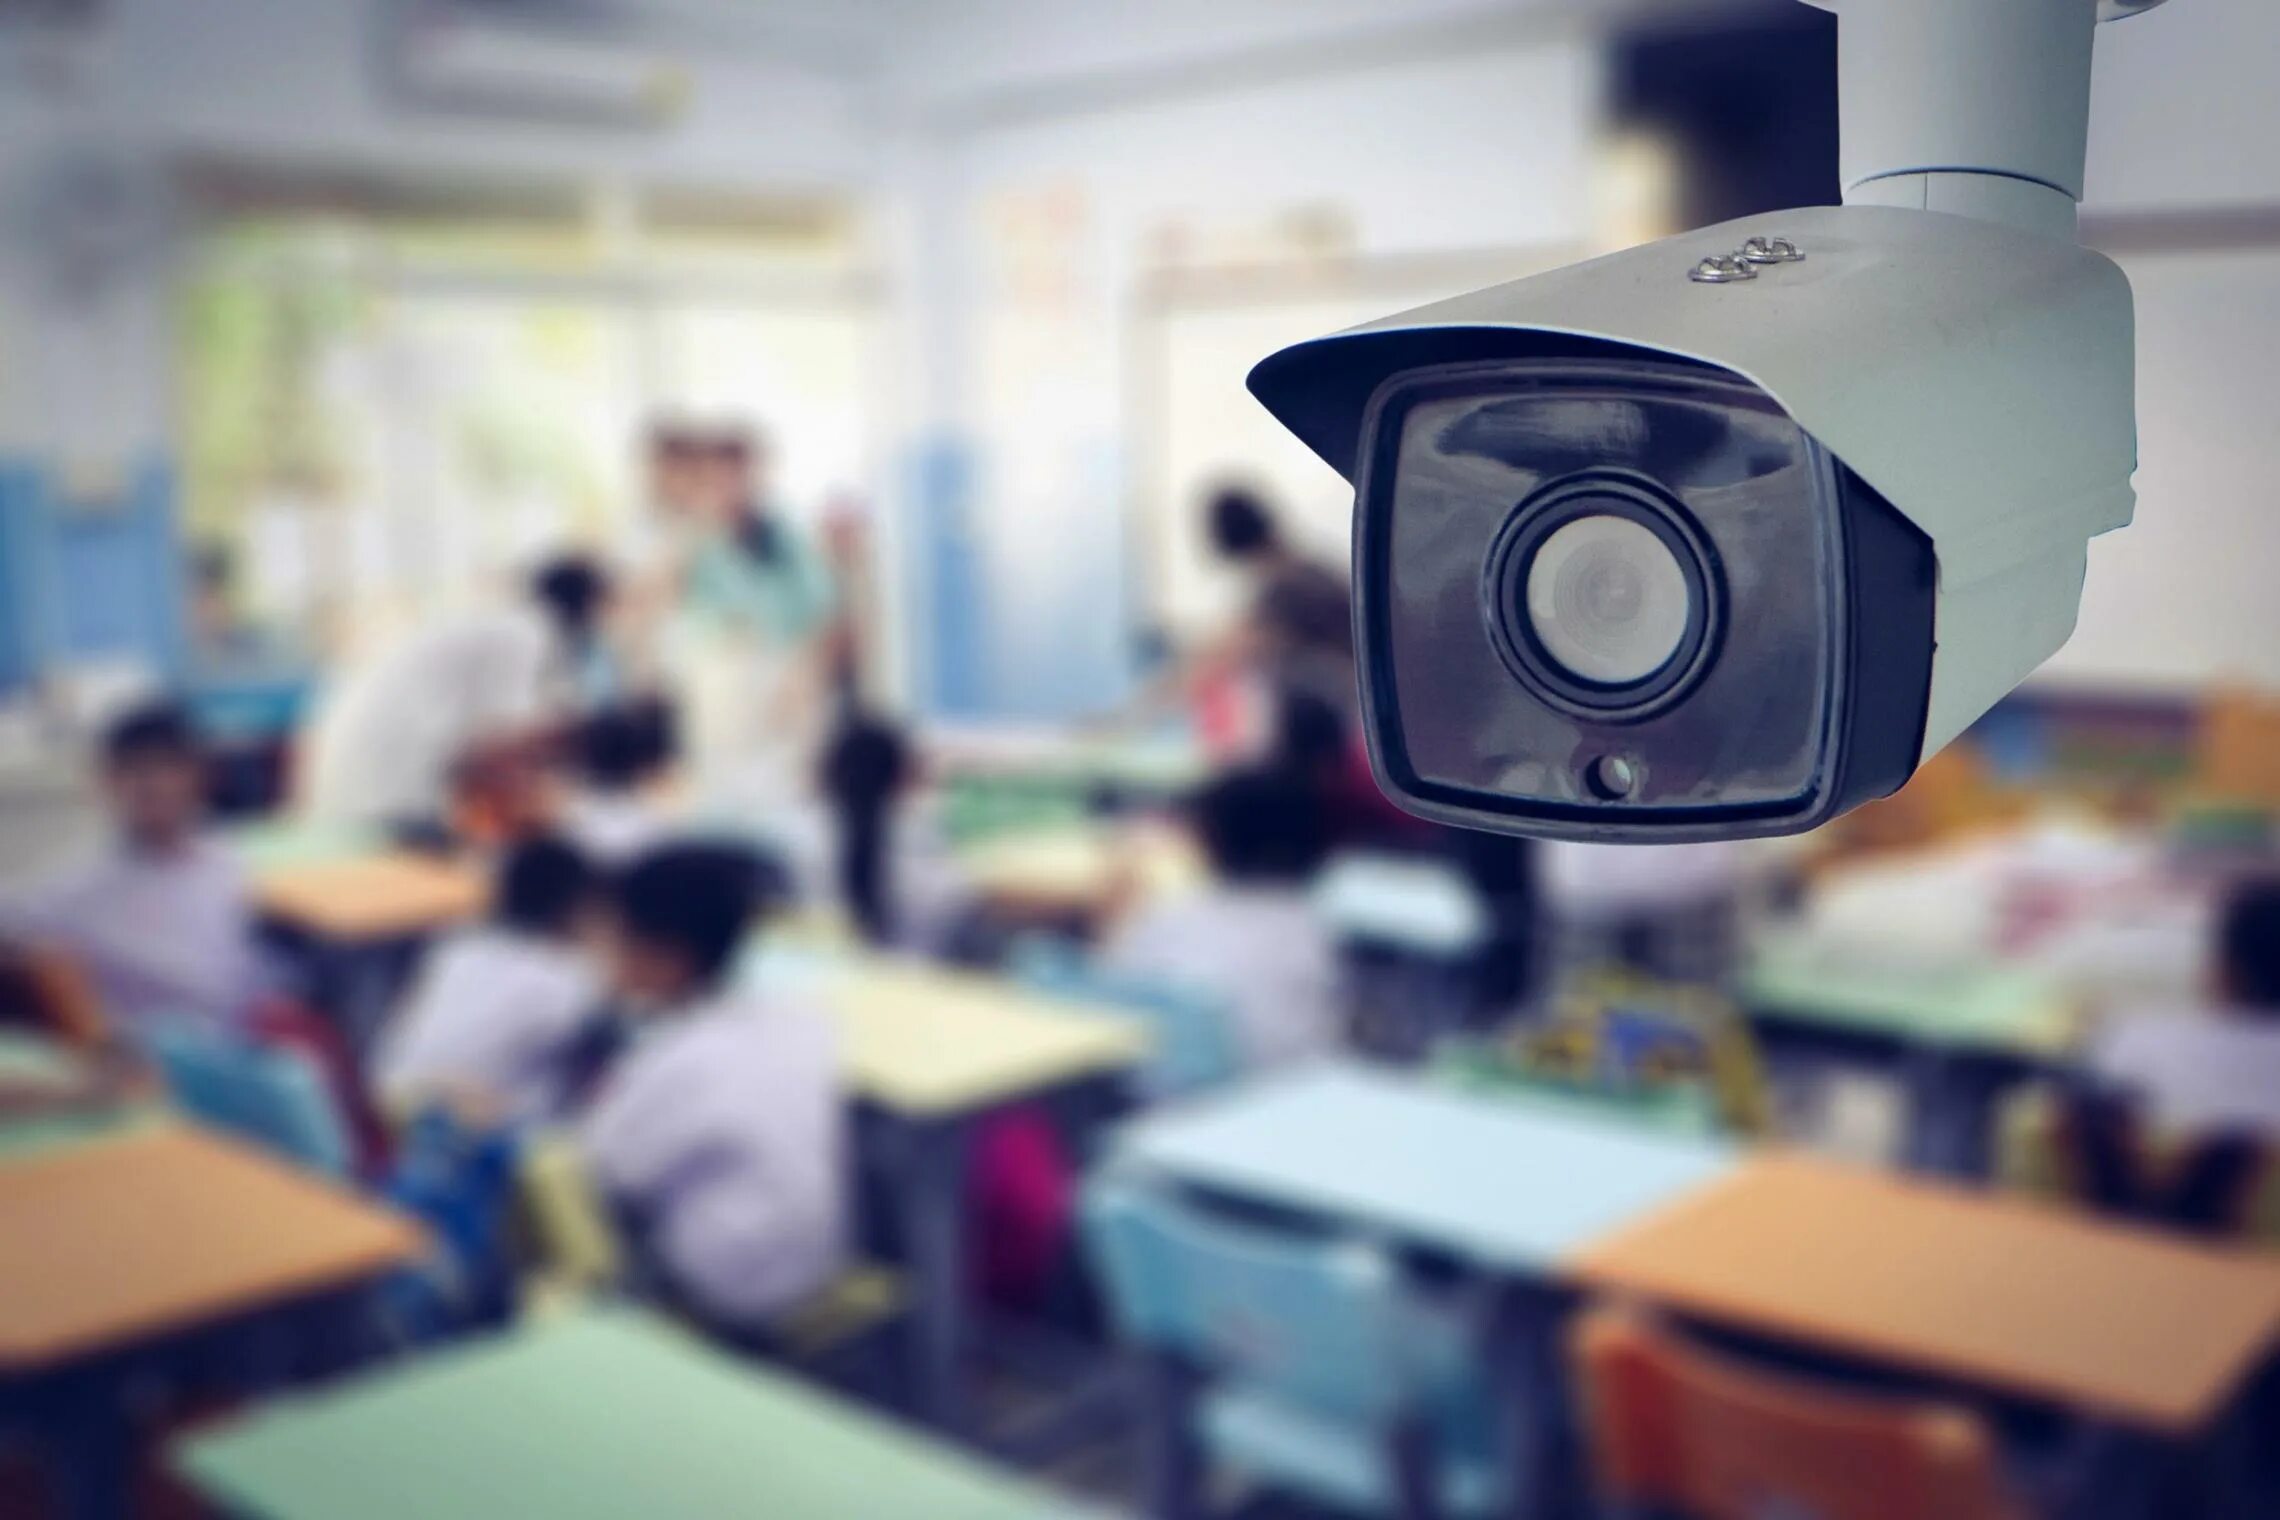 School game видеокамера. Видеонаблюдение в школе. Камера видеонаблюдения. Видеокамера в школе. Камера наблюдения в школе.